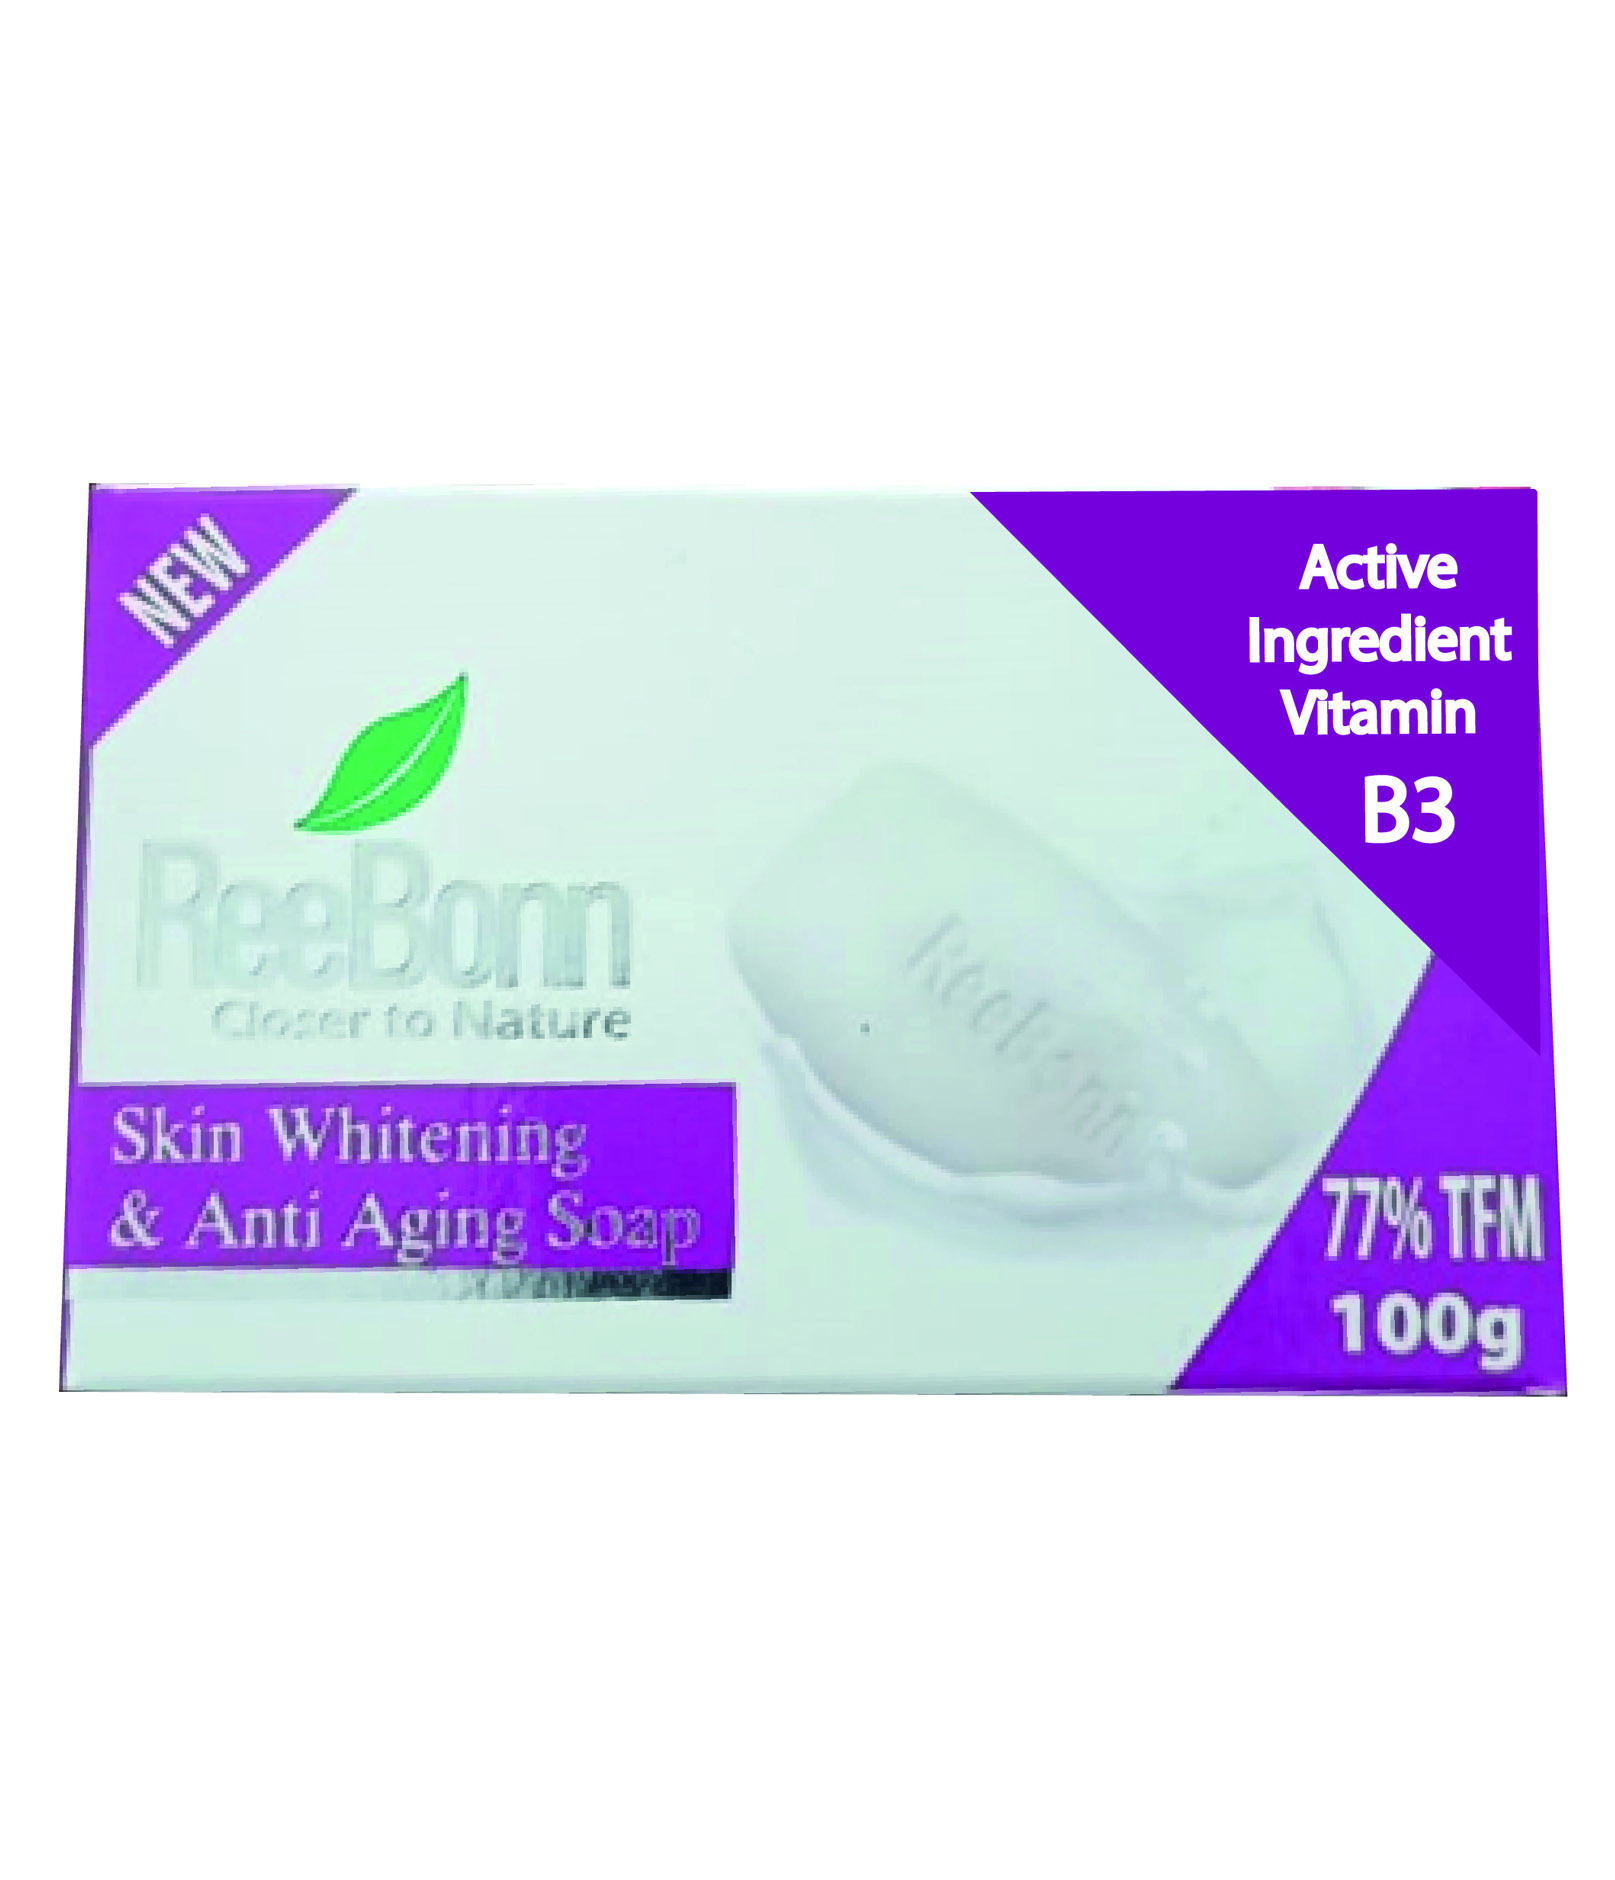 Skin Whitening & Anti-Aging soap - 100g